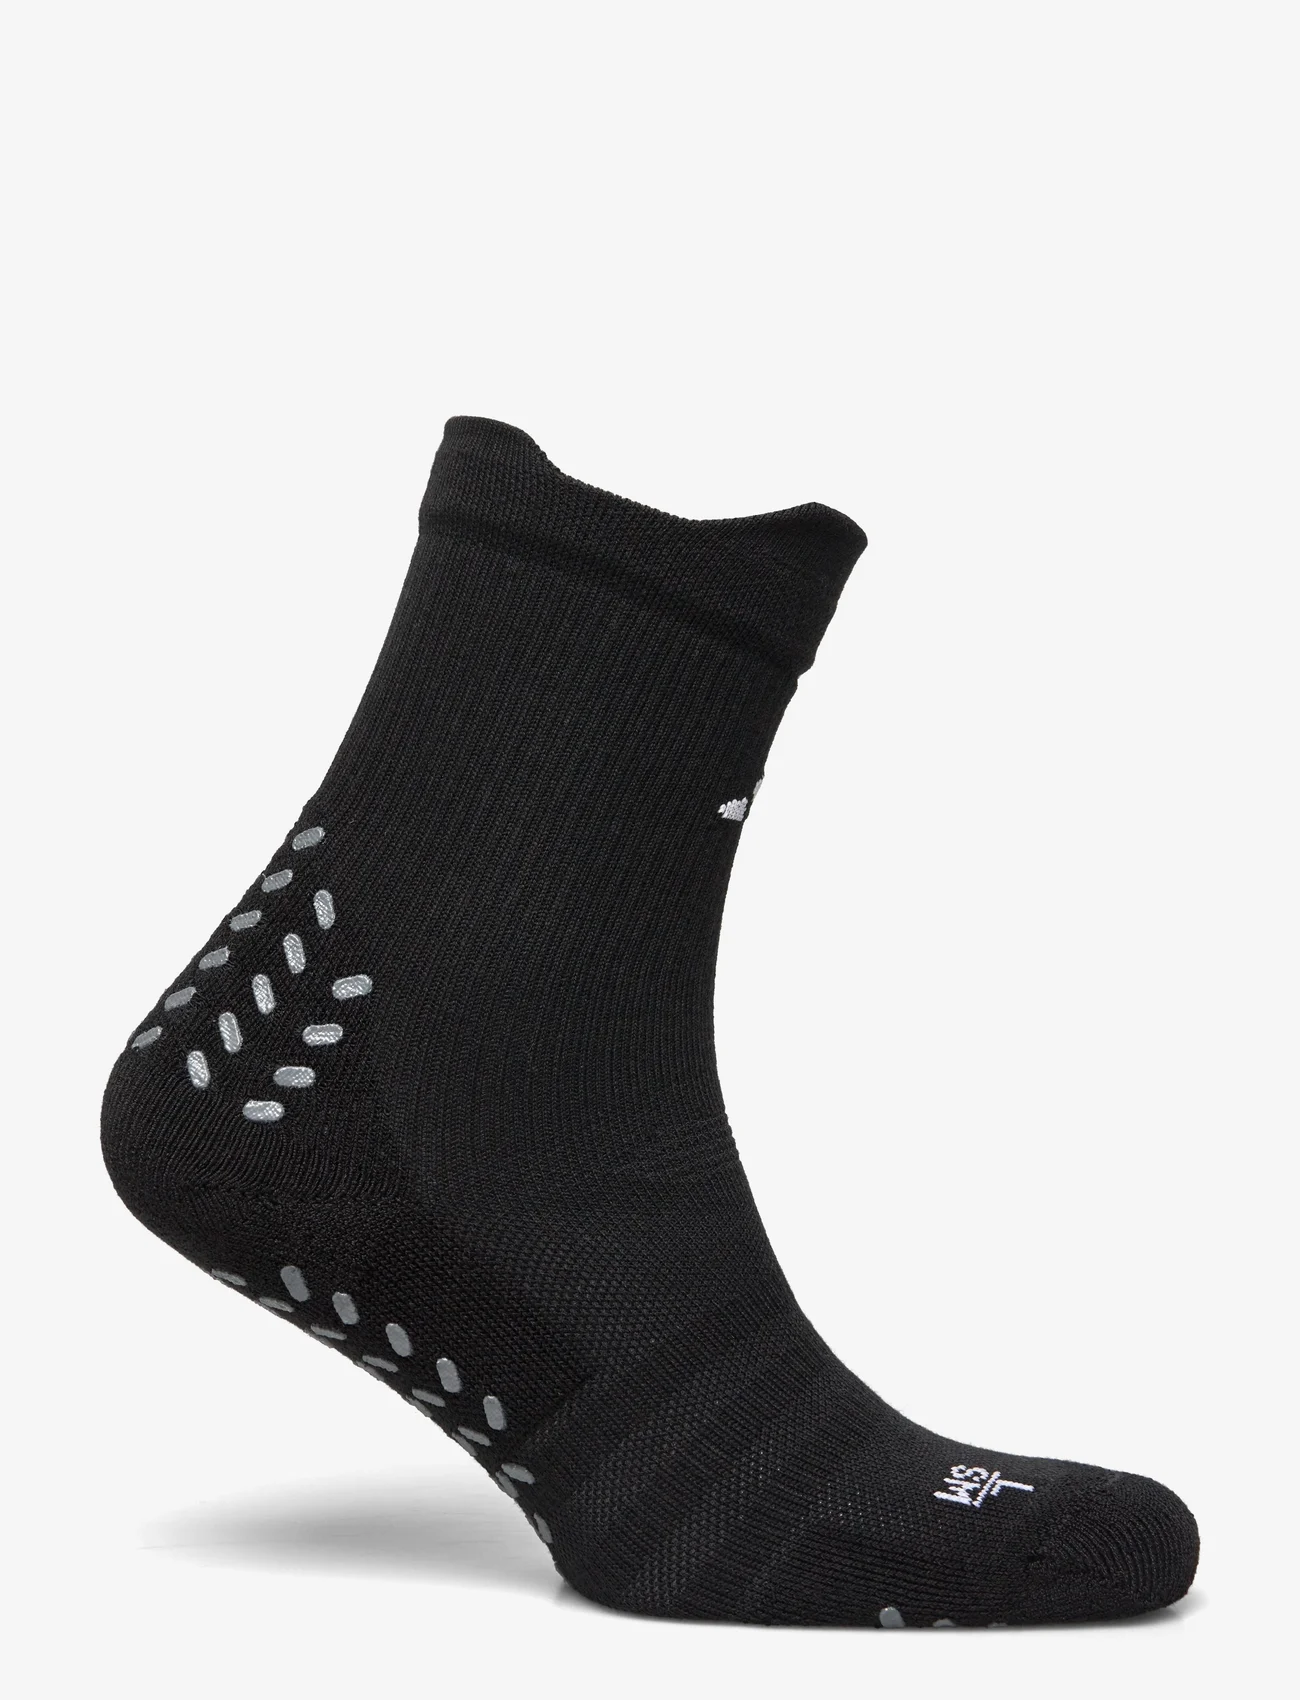 adidas Performance - Adidas Football GRIP Printed Crew Performance Socks Cushioned - madalaimad hinnad - black/white - 1